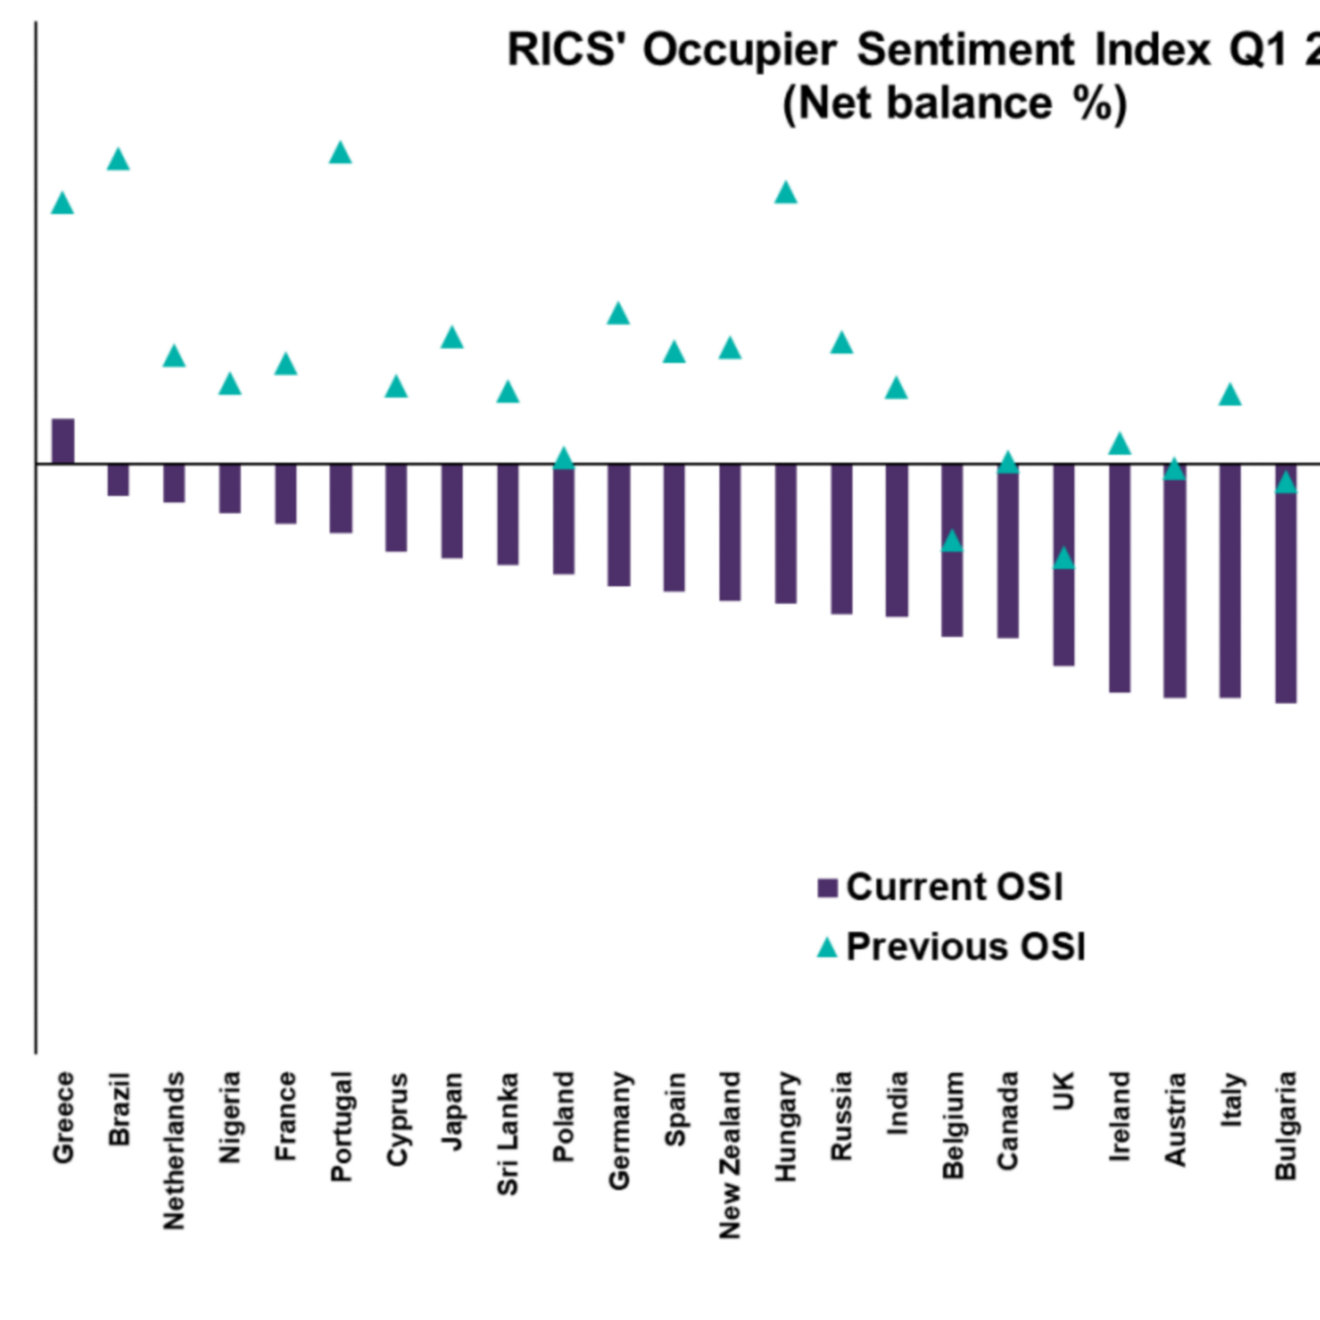 RICS Occupier Sentiment Index Q1 2020